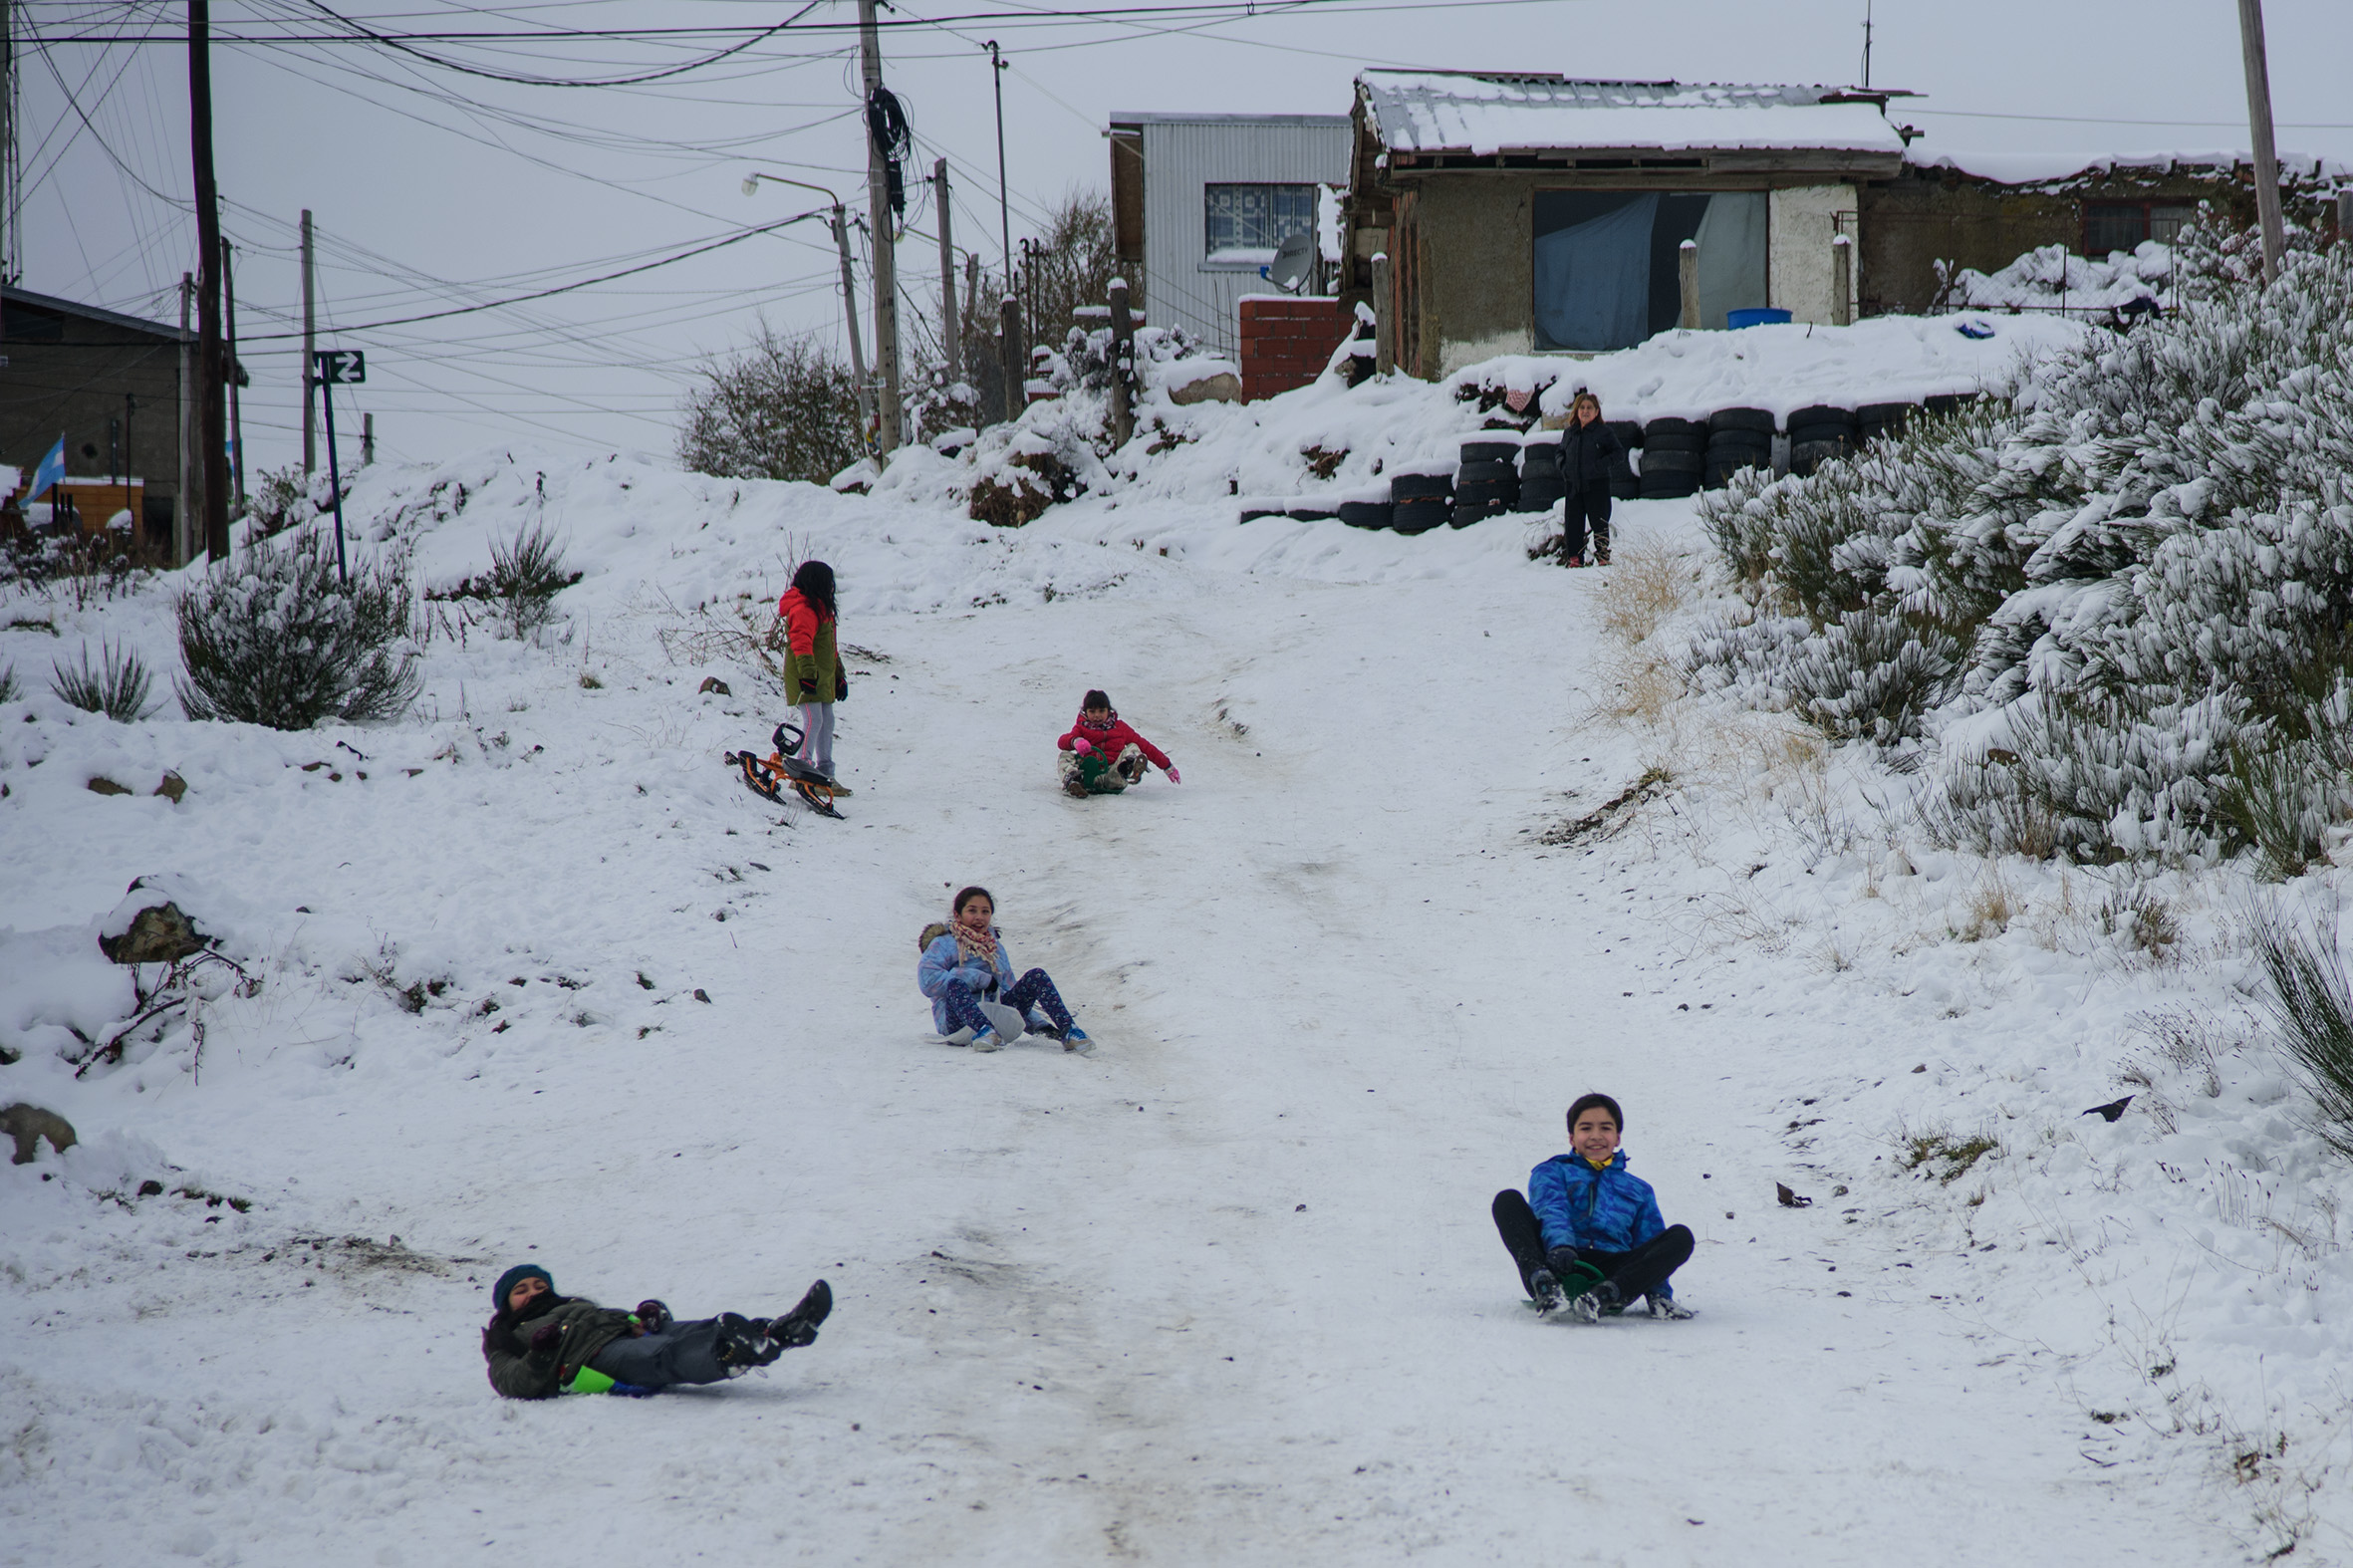 Niñas y niños de los barrios del Alto de Bariloche se divierten en la nieve tras semanas de cuarentena por el coronavirus. Foto: Marcelo Martínez